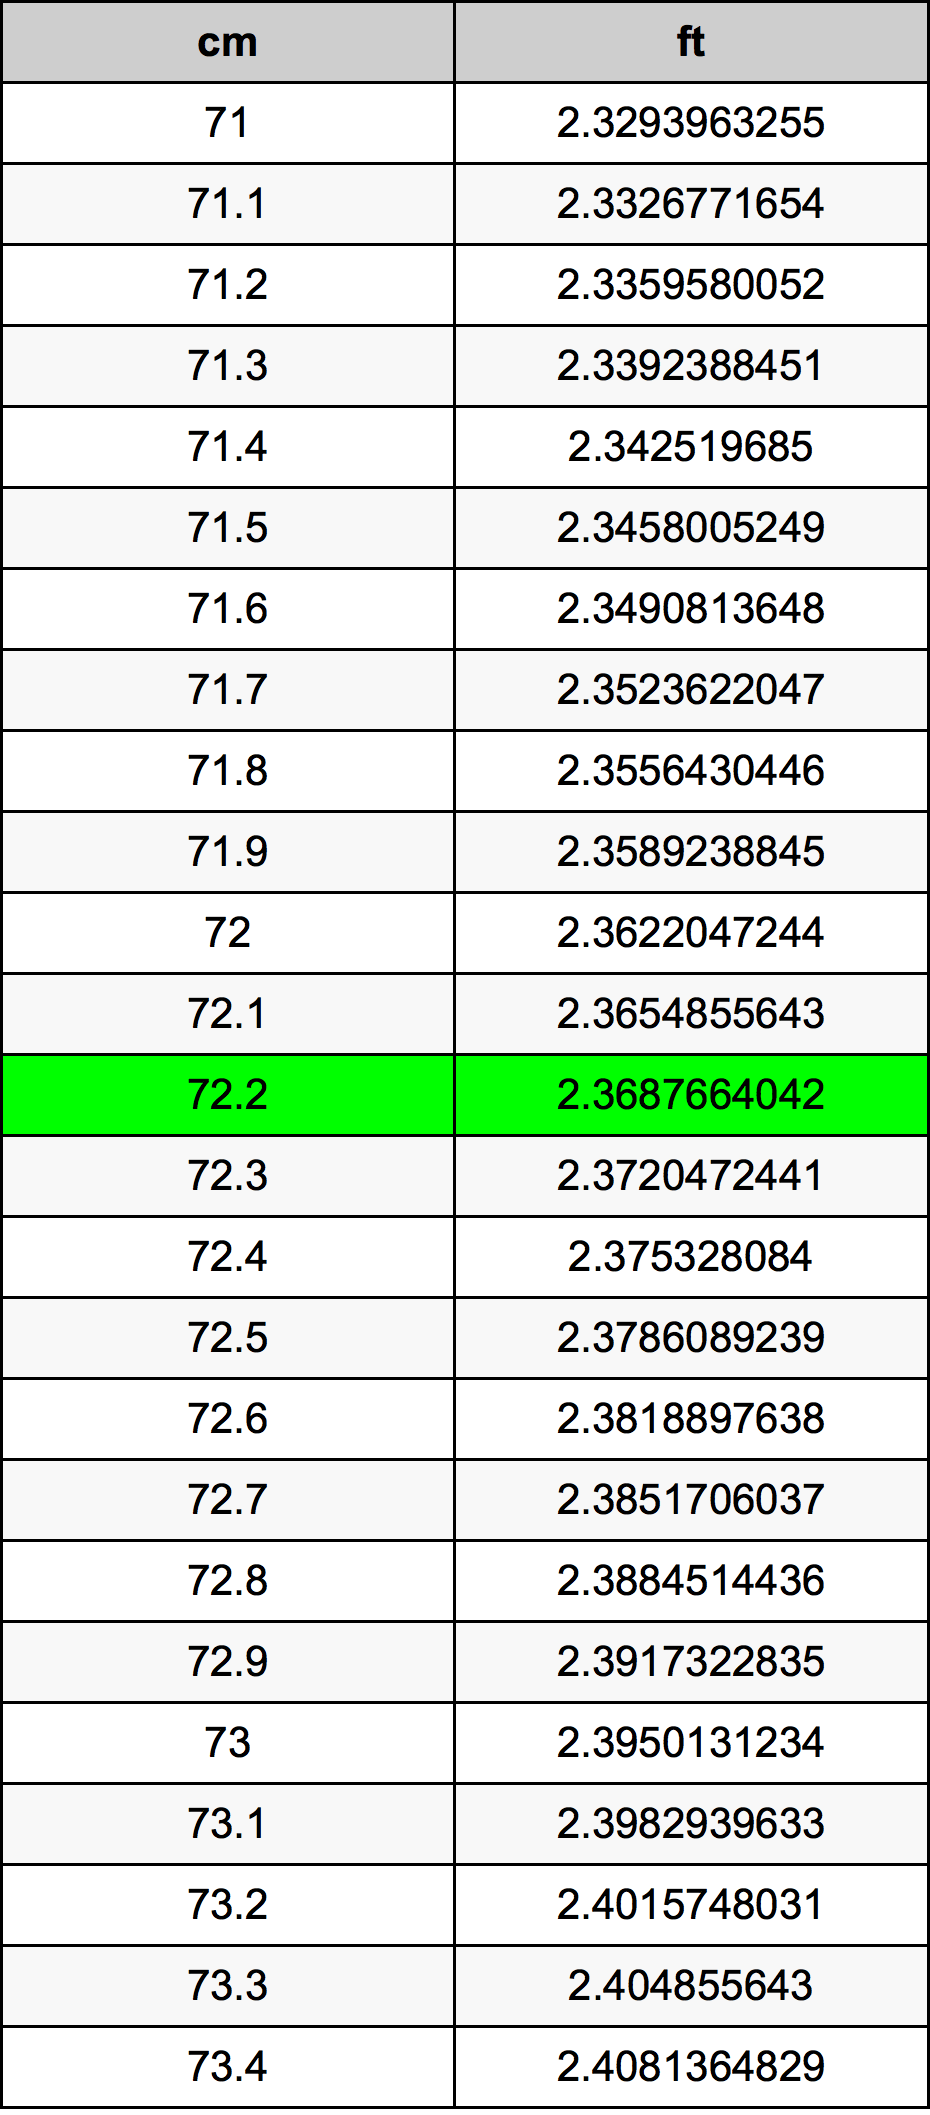 72.2 Centiméter átszámítási táblázat